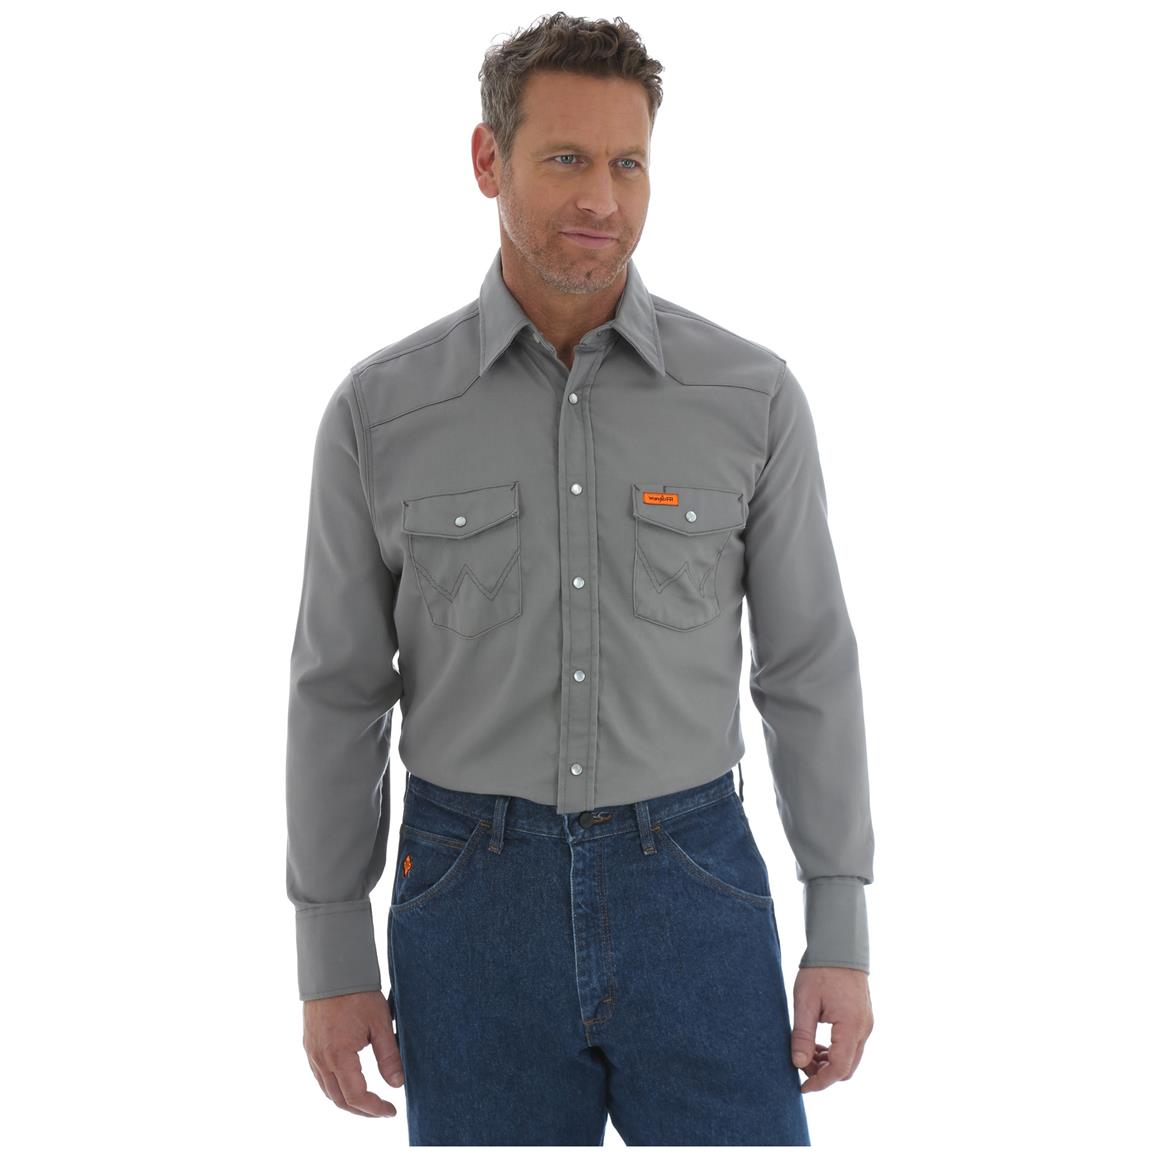 Carhartt Men's Weathered Canvas Shirt Jacket - 607664, Shirts at ...